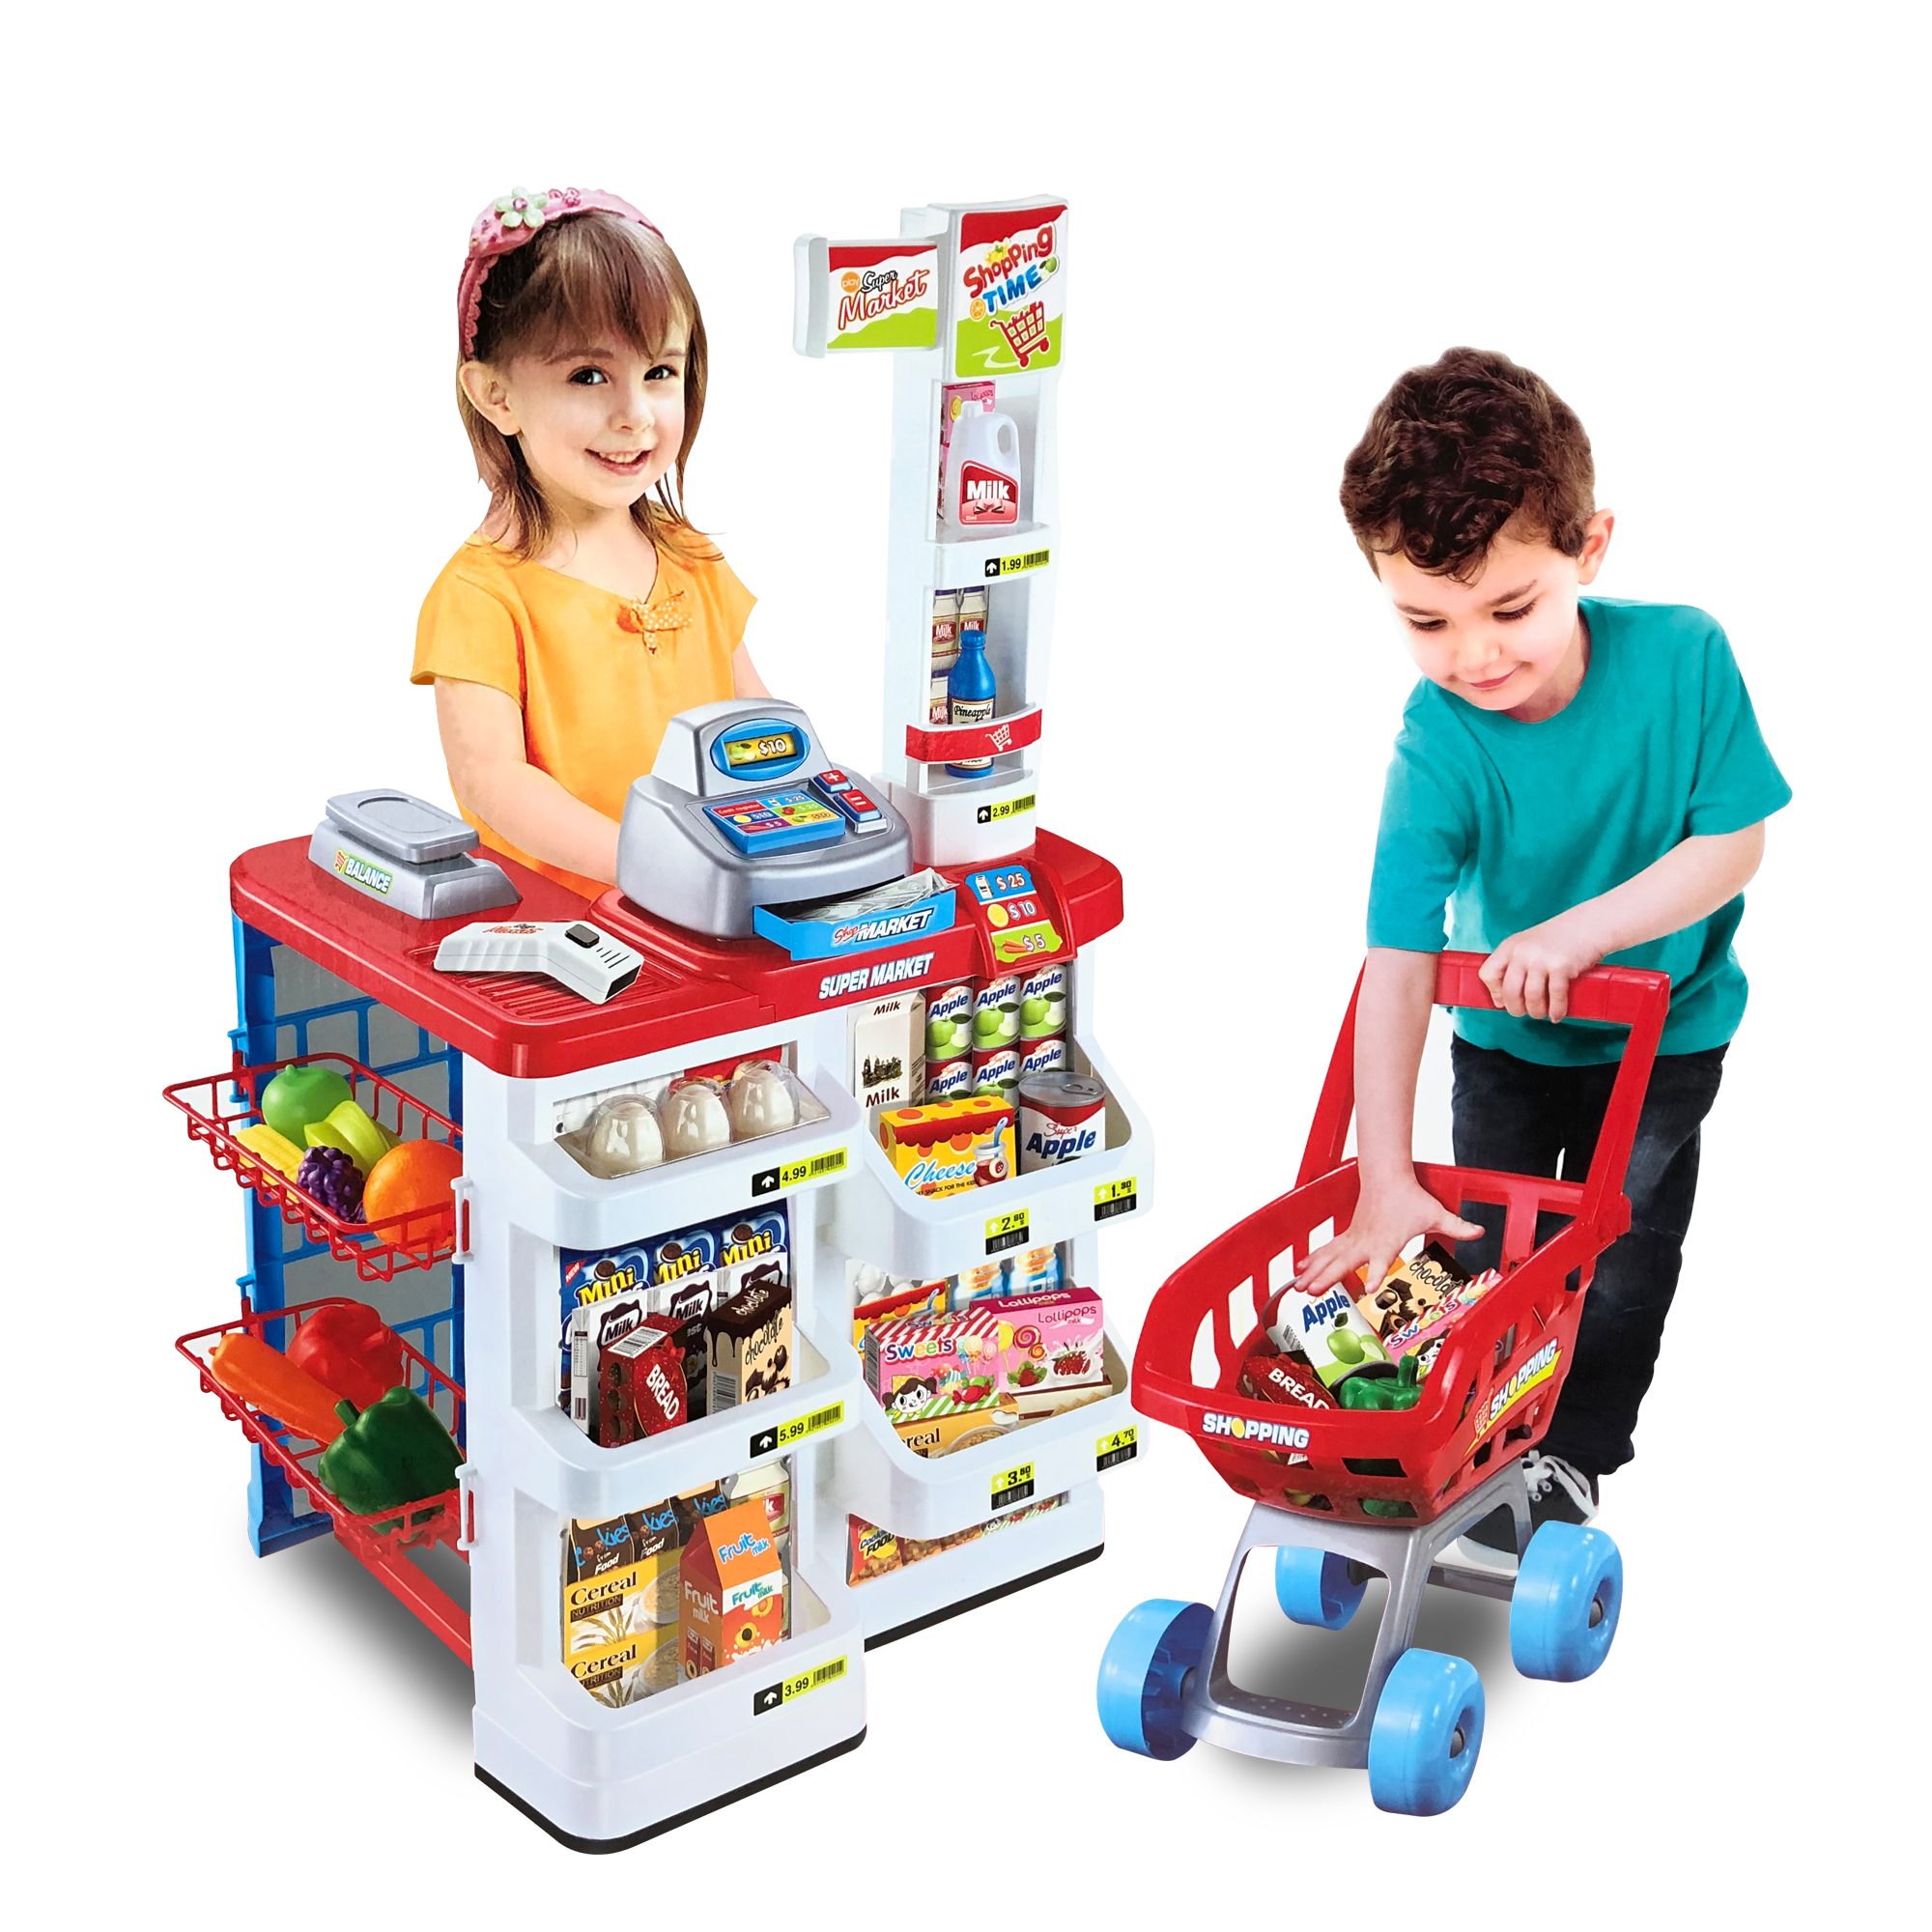 KIDTOYS New Home Supermarket ชุดของเล่น จำลอง ซุปเปอร์มาเก็ต ไว้ในบ้าน มี 3 แบบให้เลือก ของเล่นเด็ก บทบาทสมมุติ